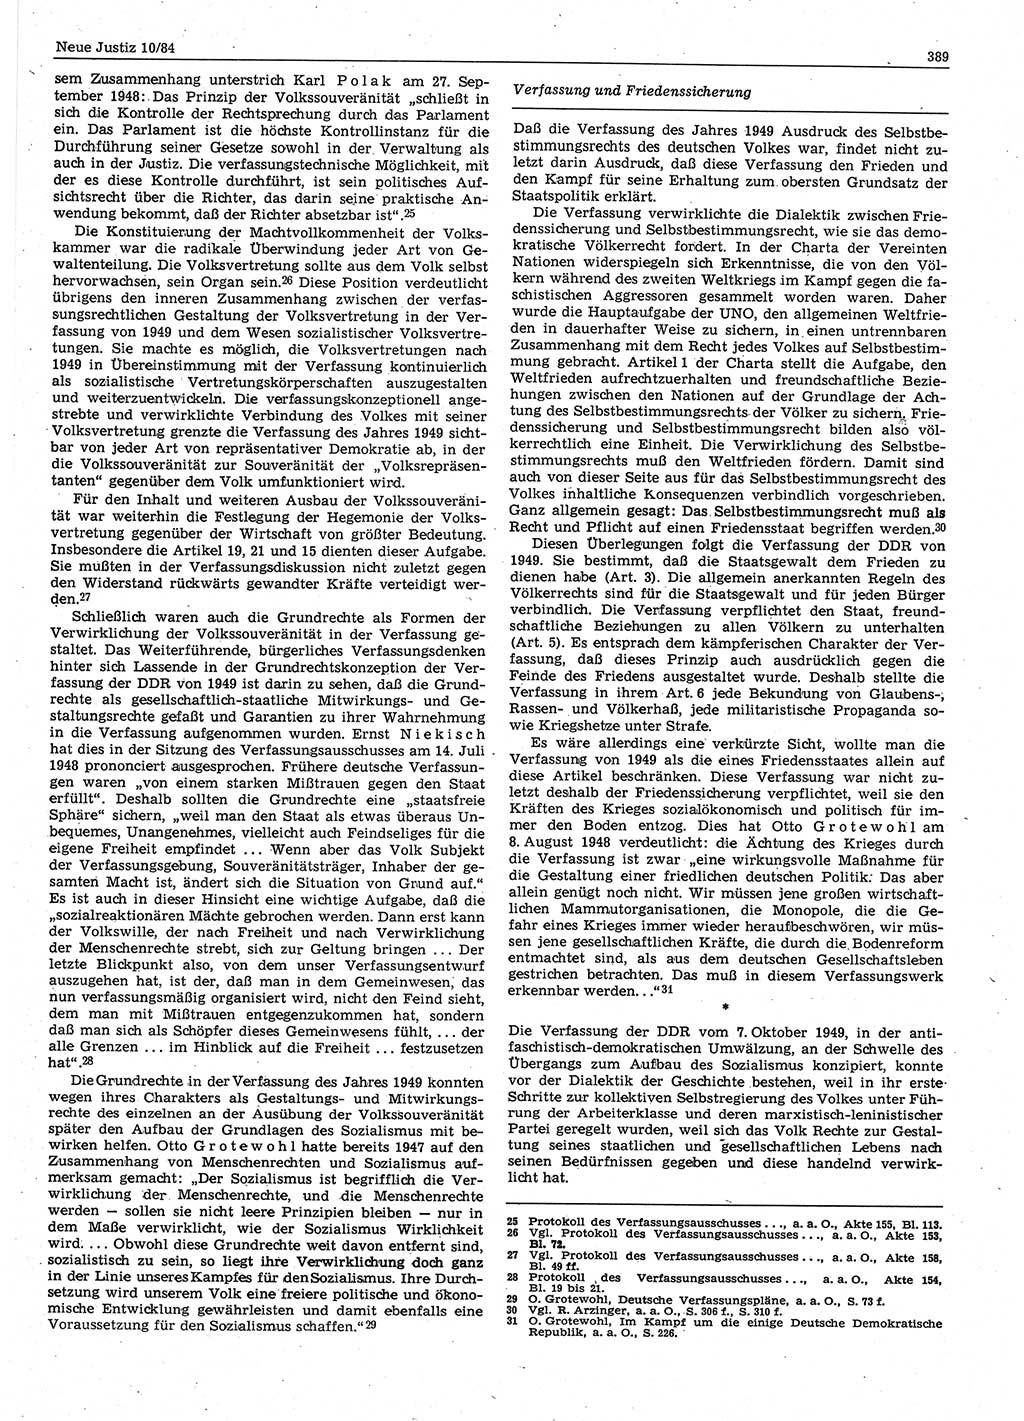 Neue Justiz (NJ), Zeitschrift für sozialistisches Recht und Gesetzlichkeit [Deutsche Demokratische Republik (DDR)], 38. Jahrgang 1984, Seite 389 (NJ DDR 1984, S. 389)